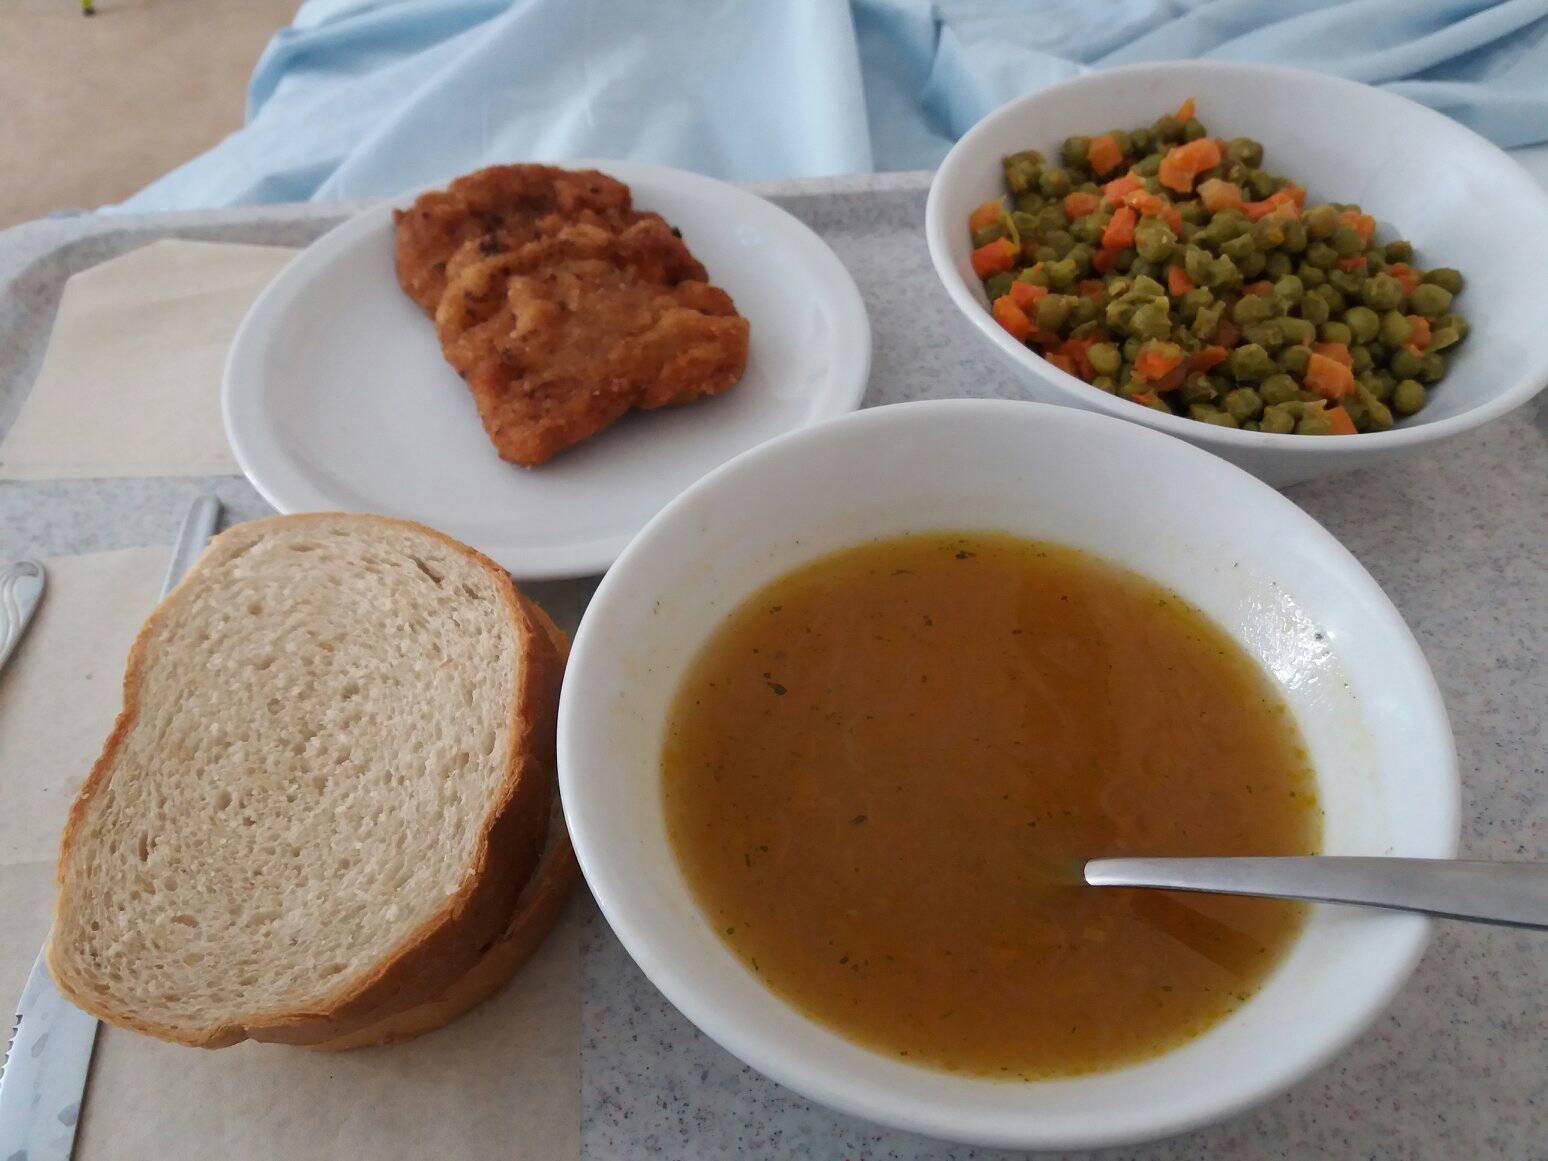 Pogledajte obroke pacijenata: 'Neka ministar svrati na ručak'